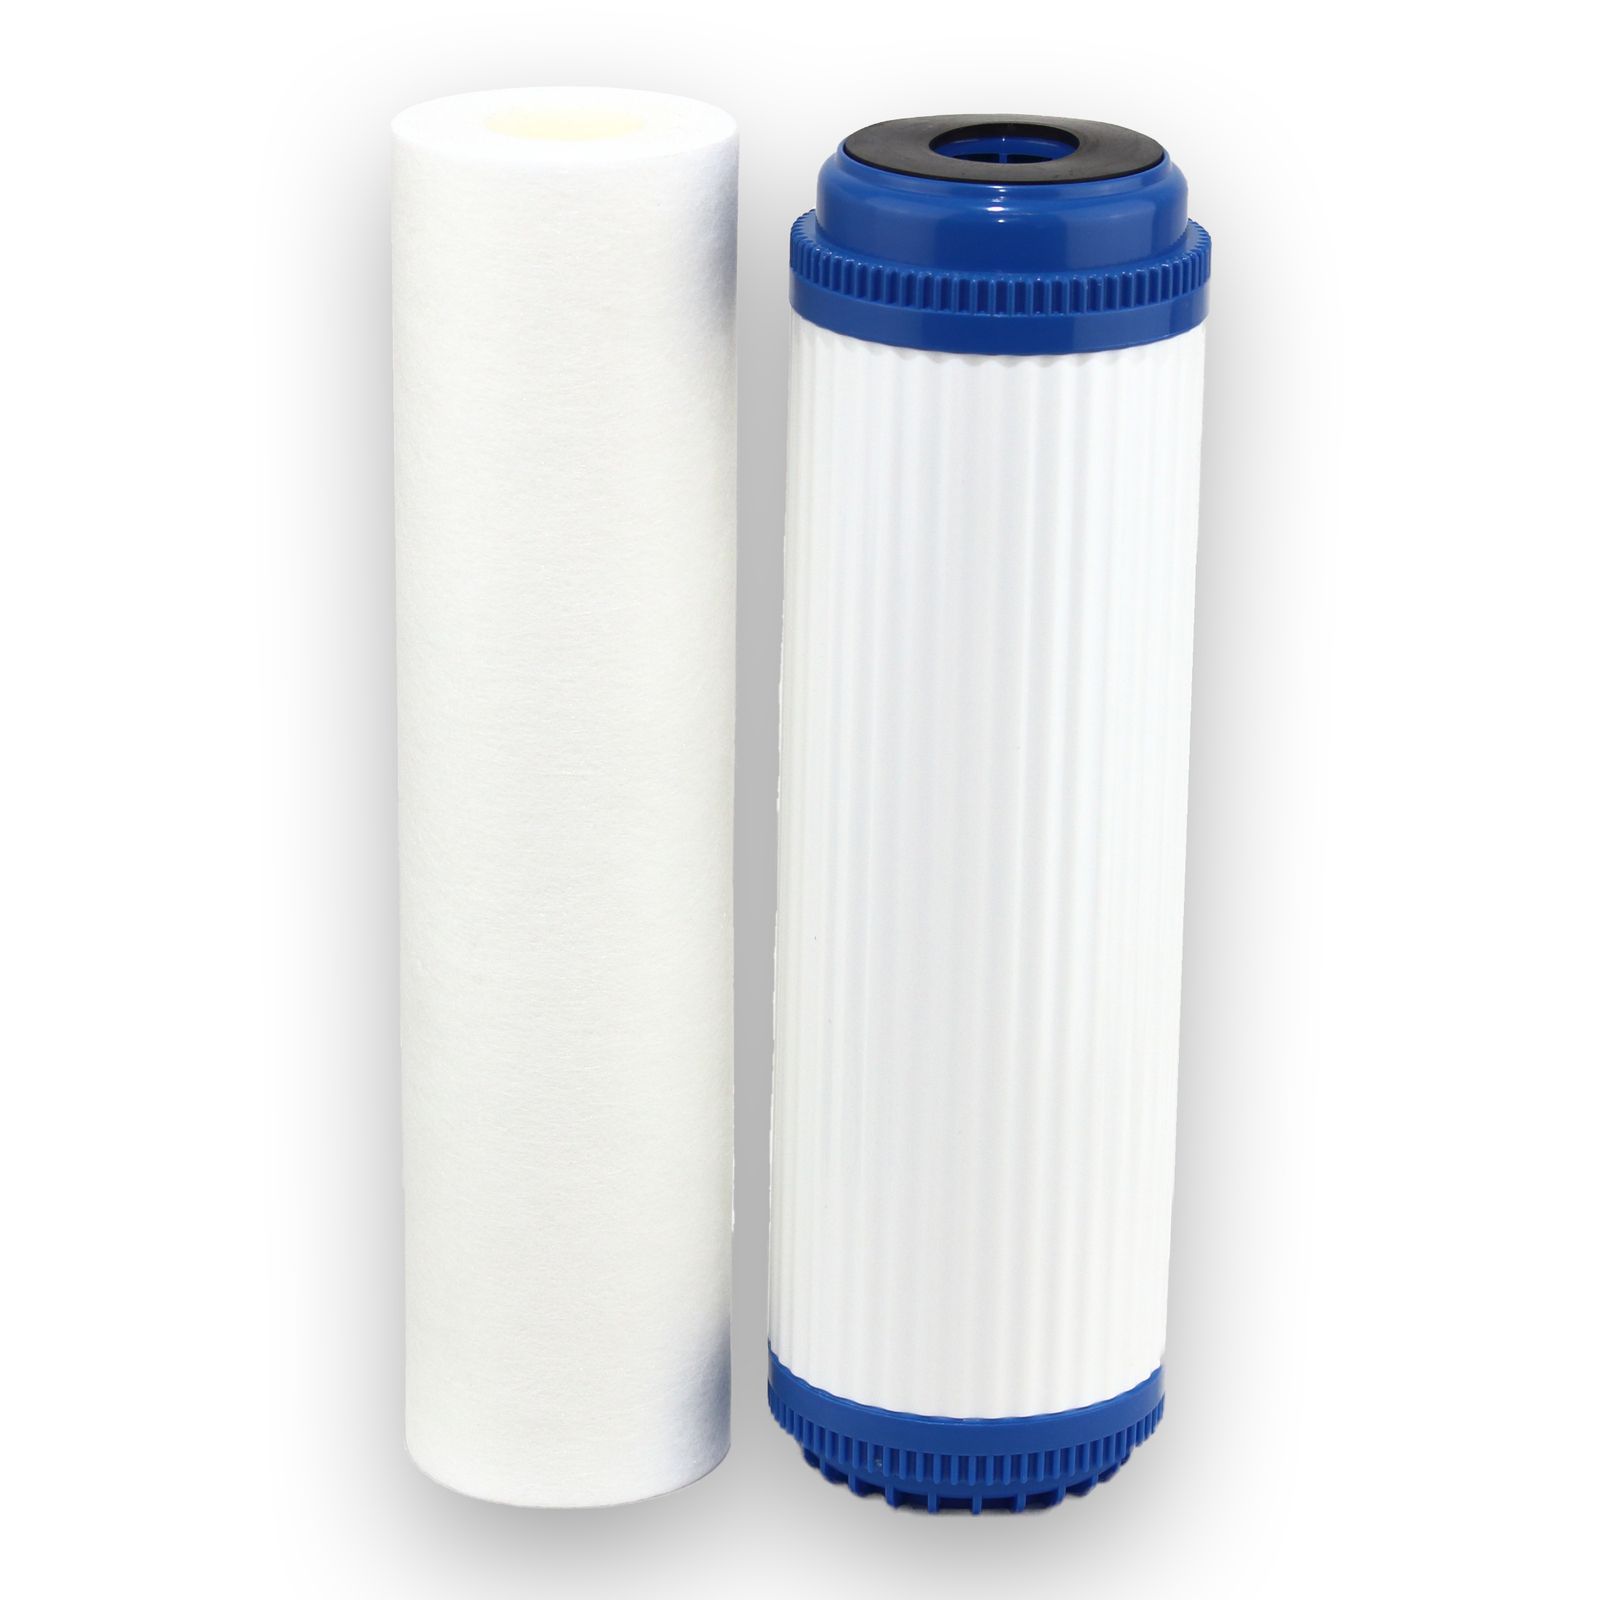 Uniflow Granular Carbon Mains Water Filter Kit